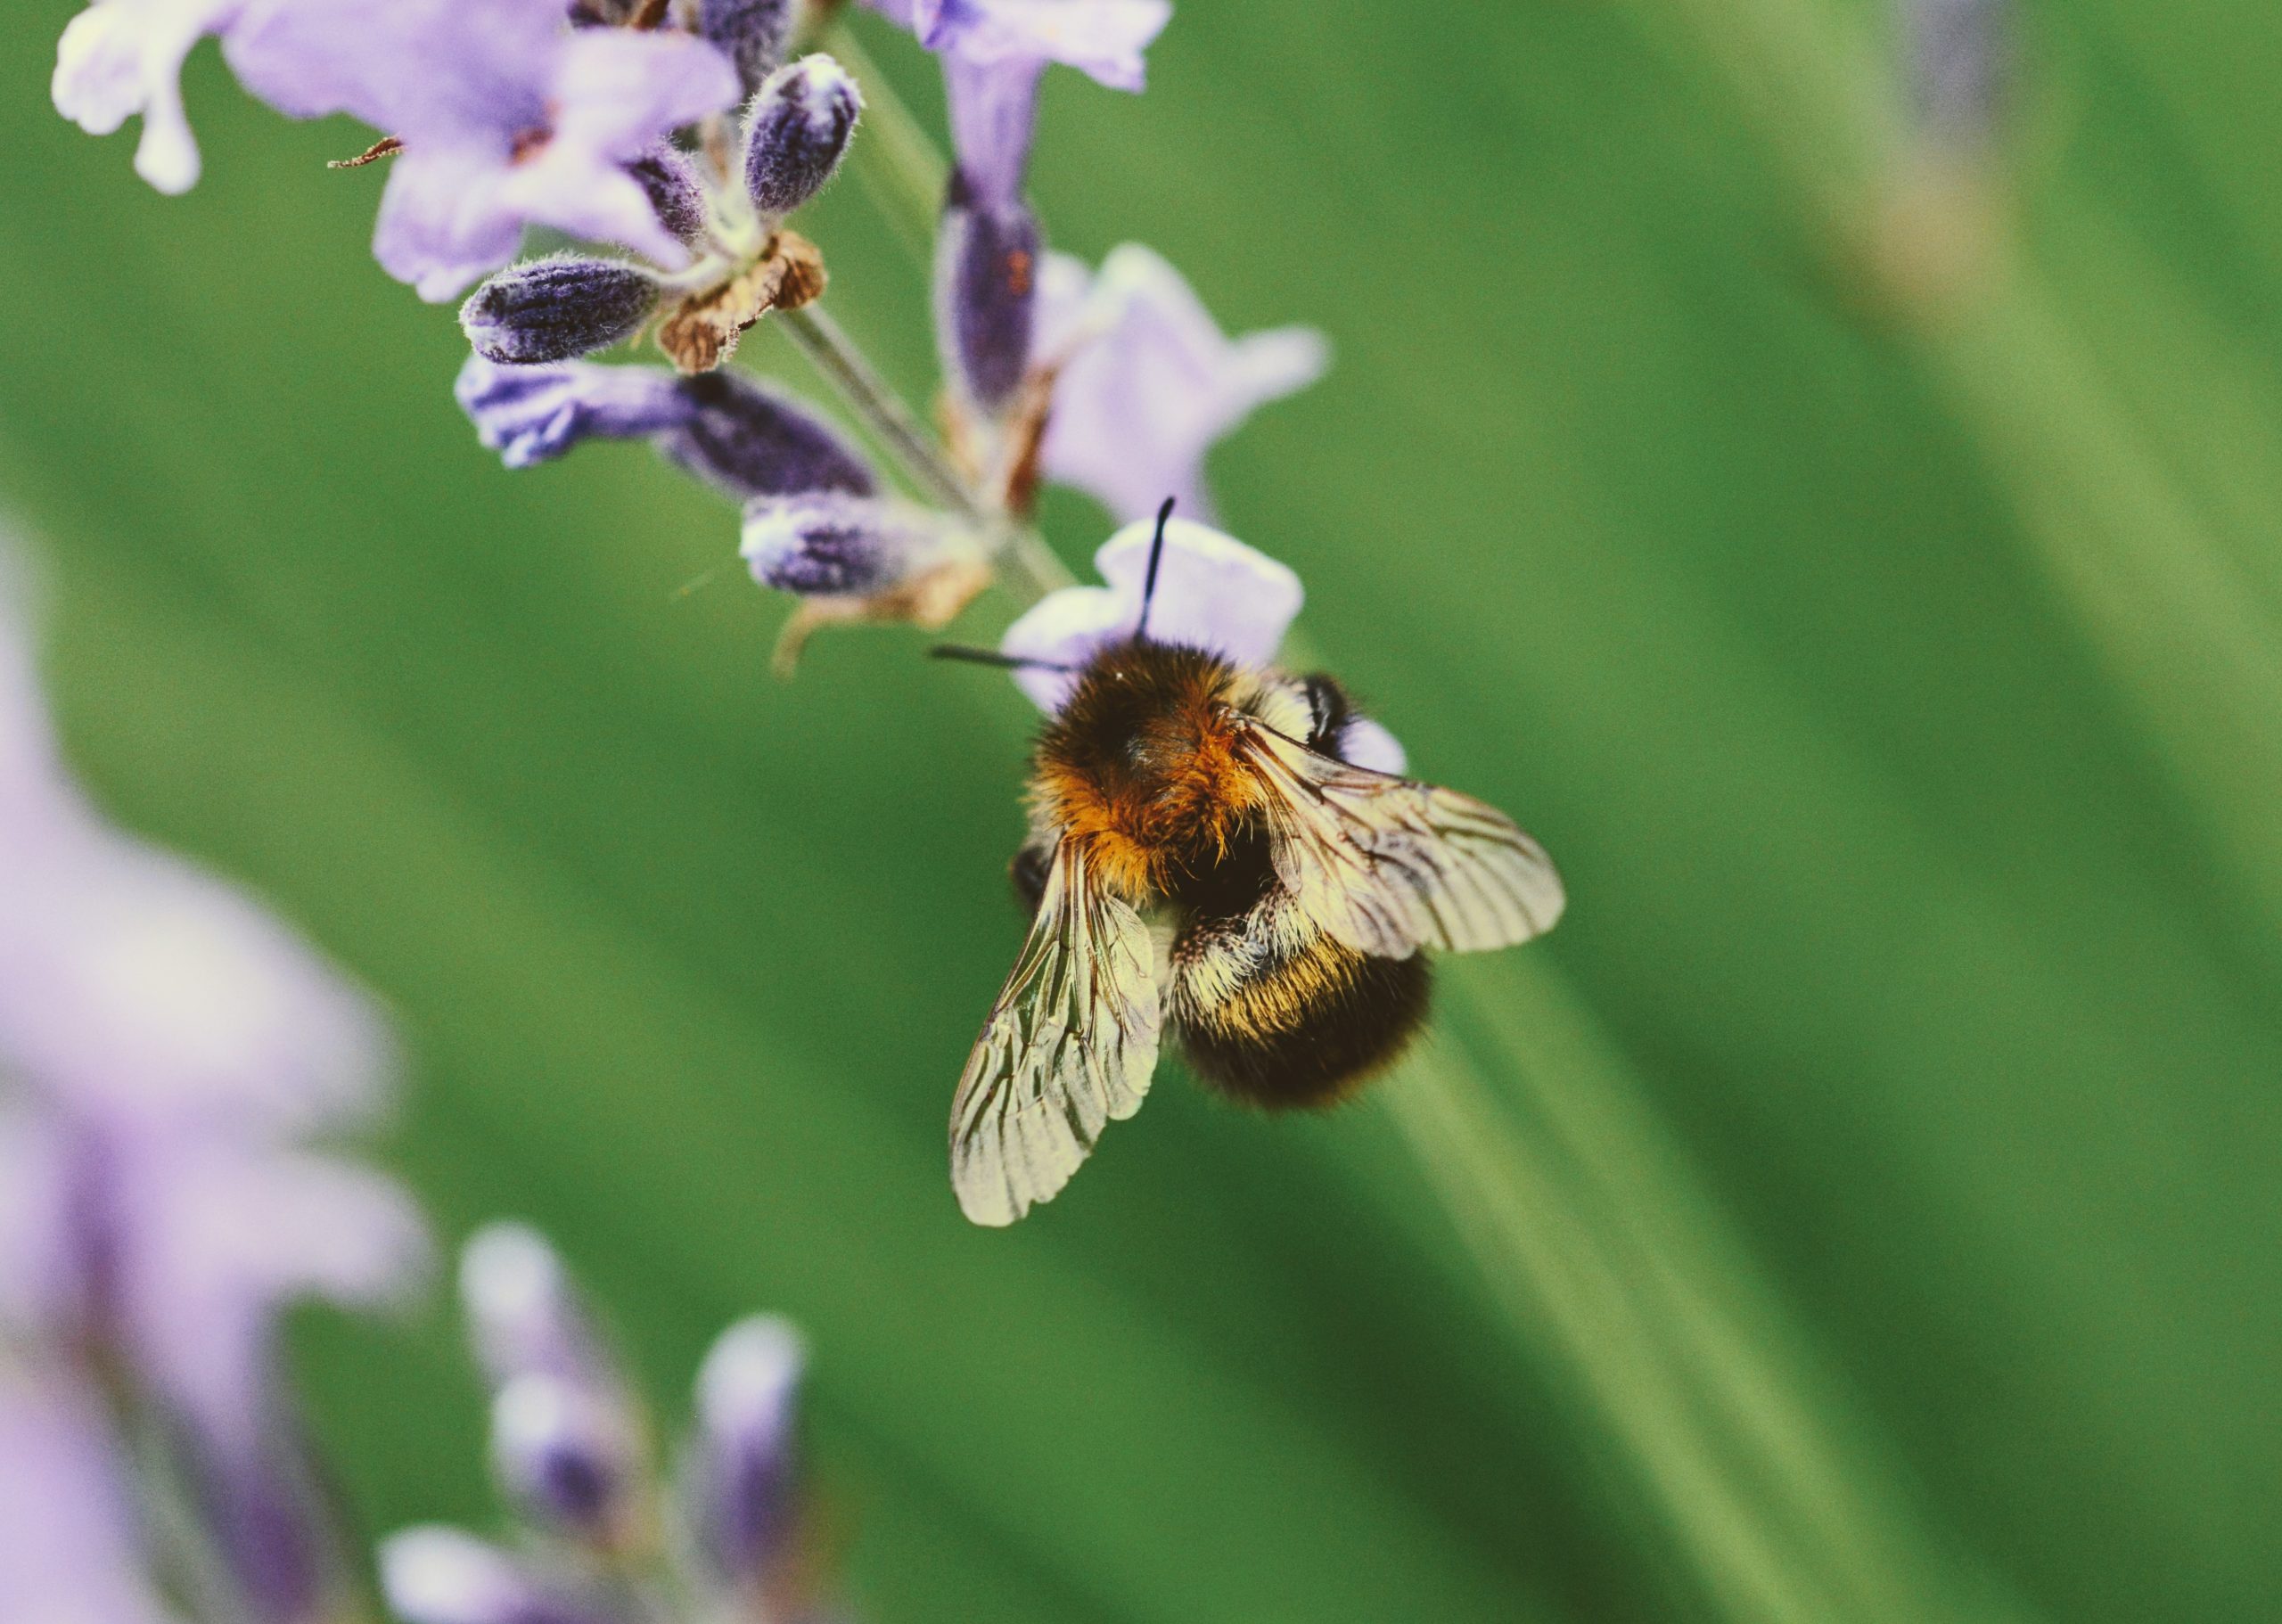 Lebah semakin stres oleh perubahan iklim selama 100 tahun terakhir